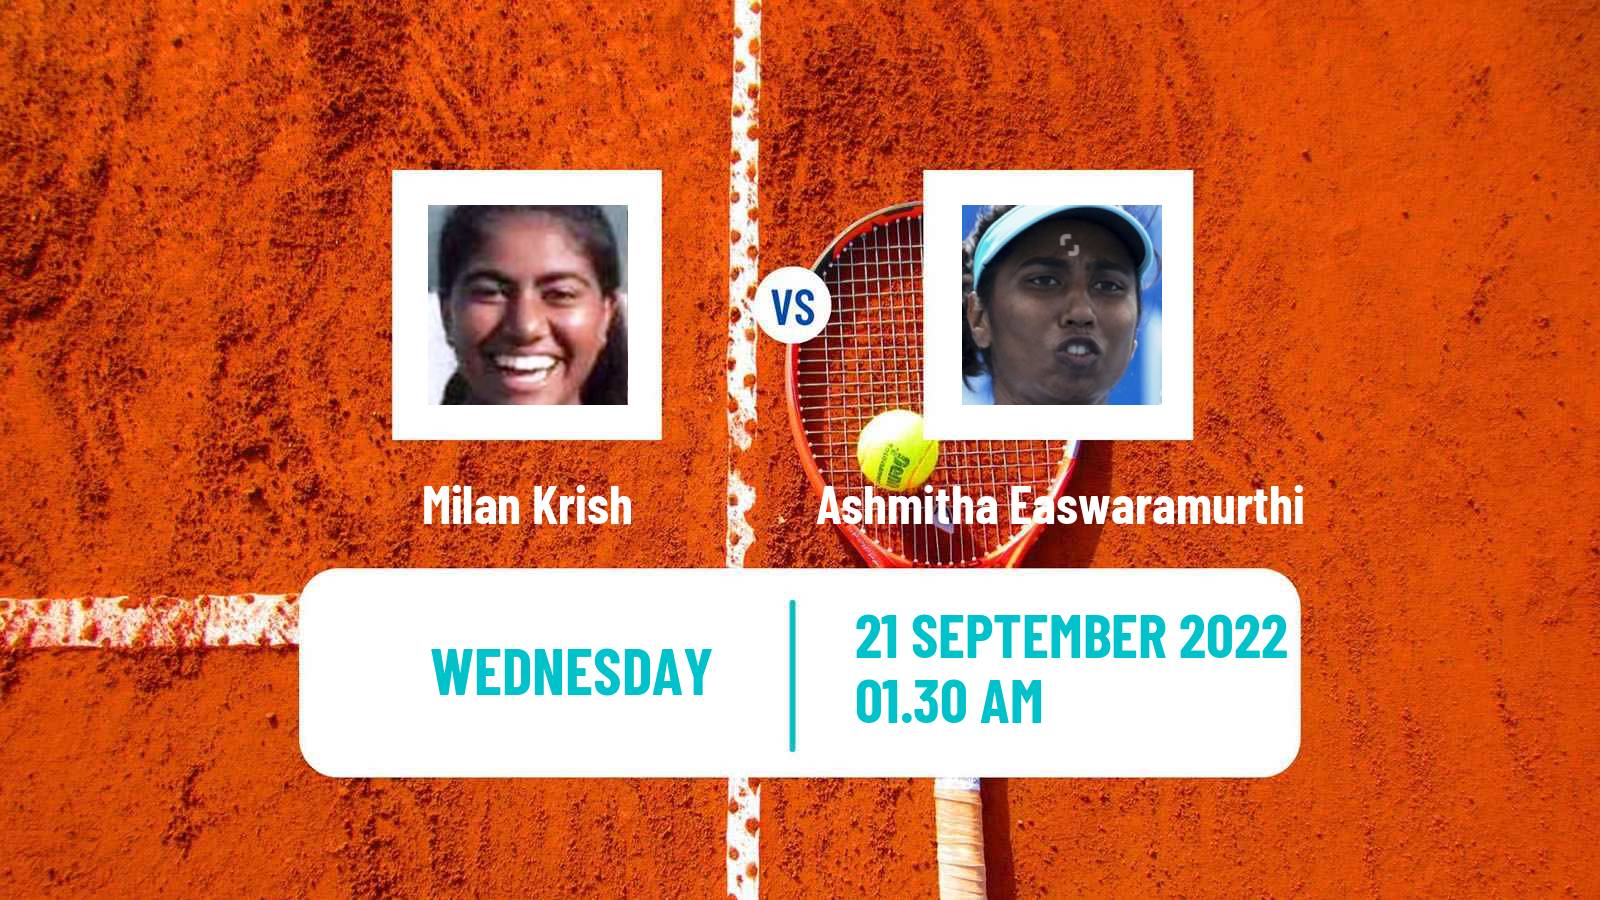 Tennis ITF Tournaments Milan Krish - Ashmitha Easwaramurthi